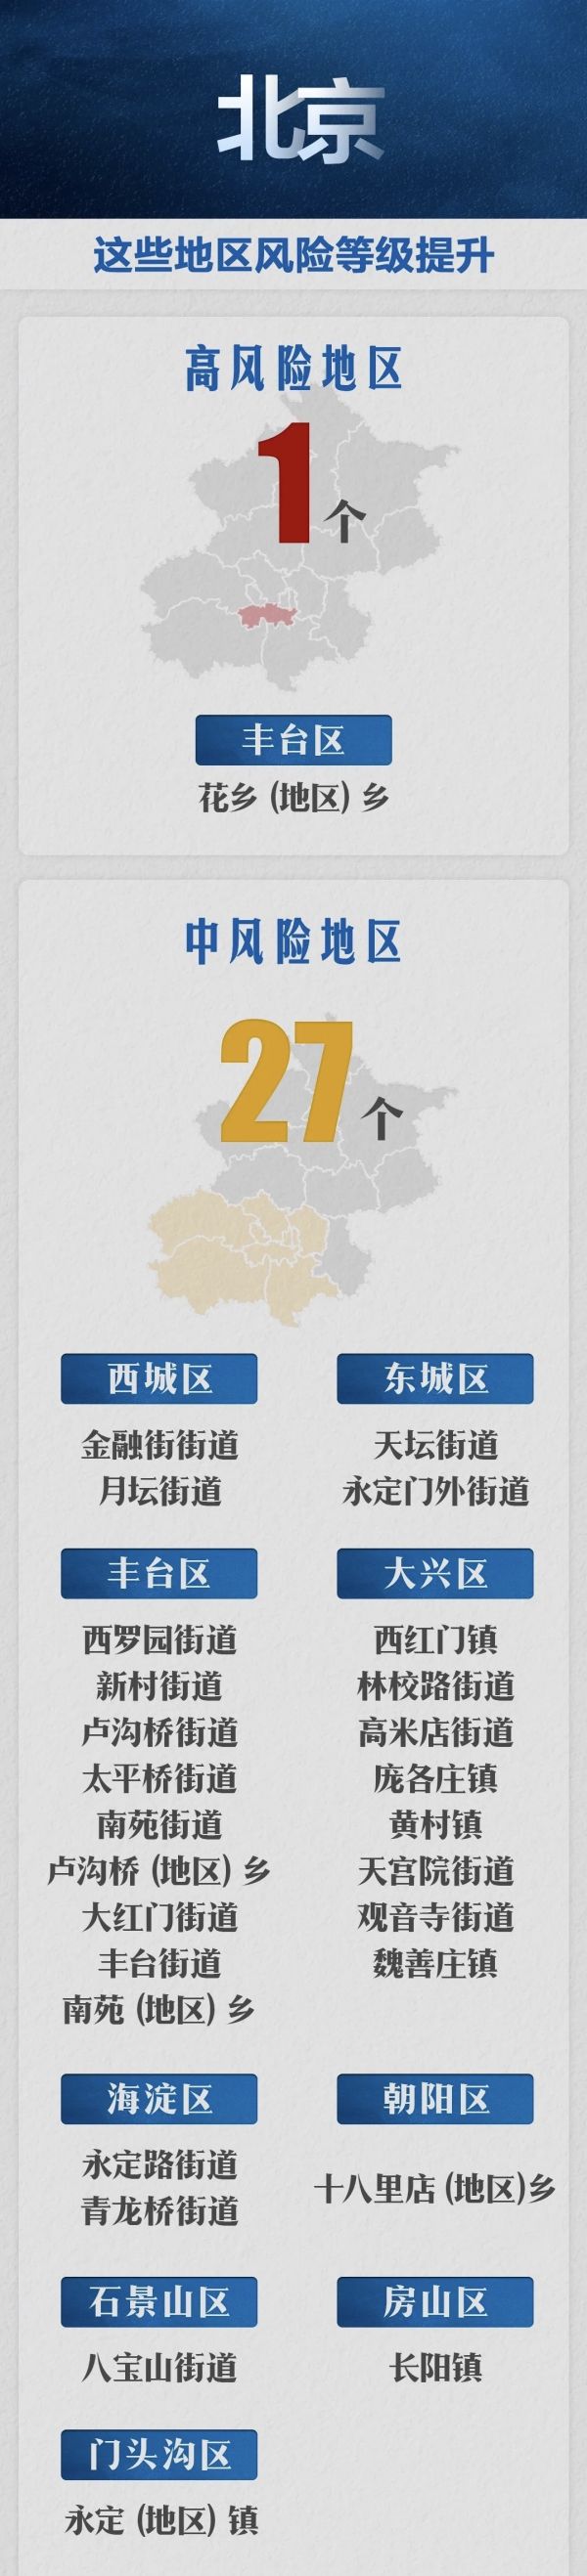 北京市突发公共卫生事件应急响应级别由三级调至二级